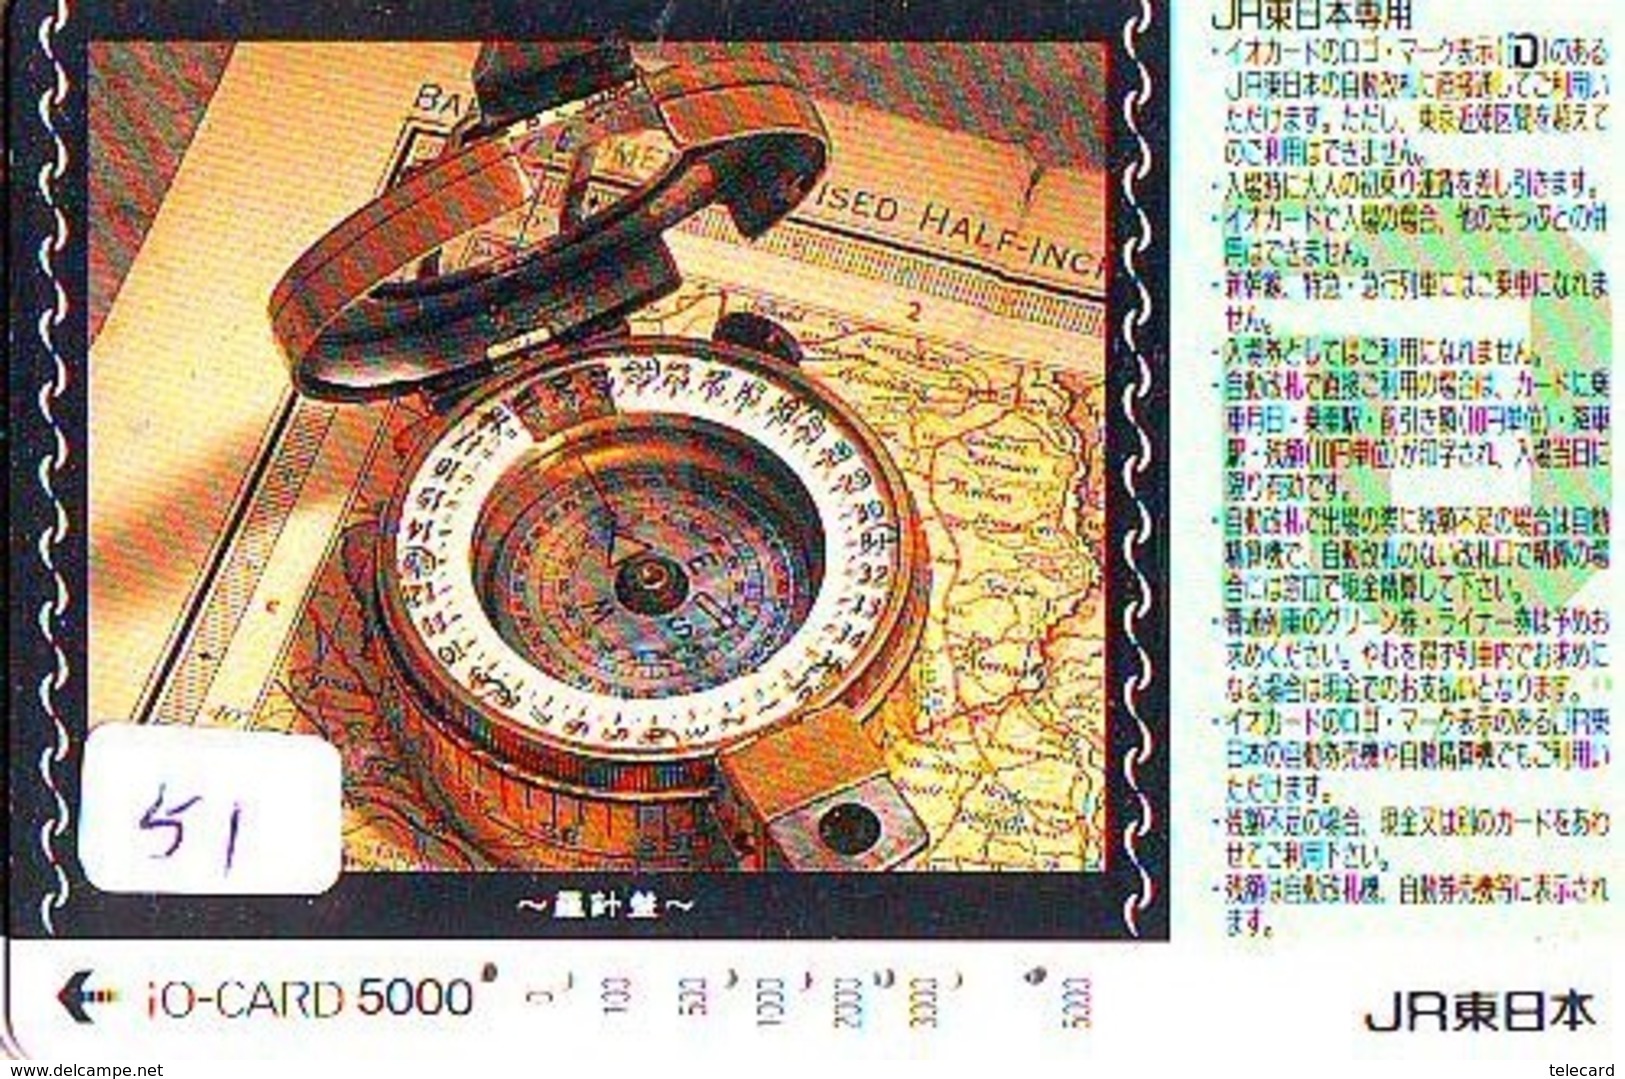 Compass Boussole Kompaß Kompas Sur Carte JAPAN (51) East West South North - Astronomy